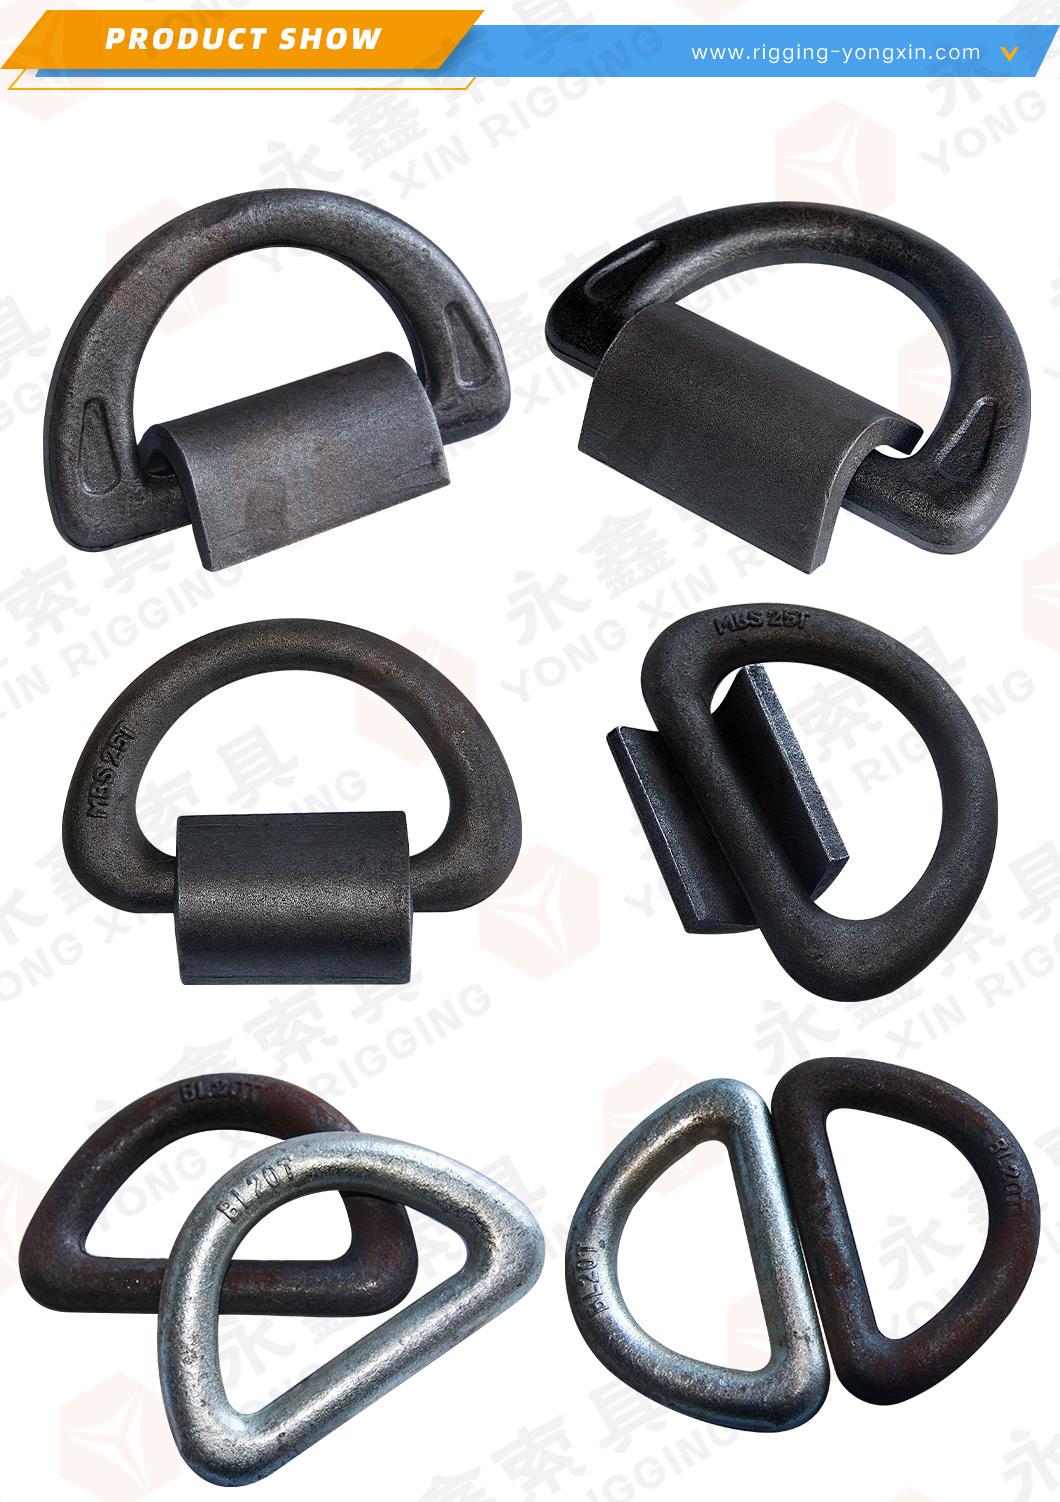 Heavy Duty Black Welded Alloy Steel D Ring Solid Metal Rings